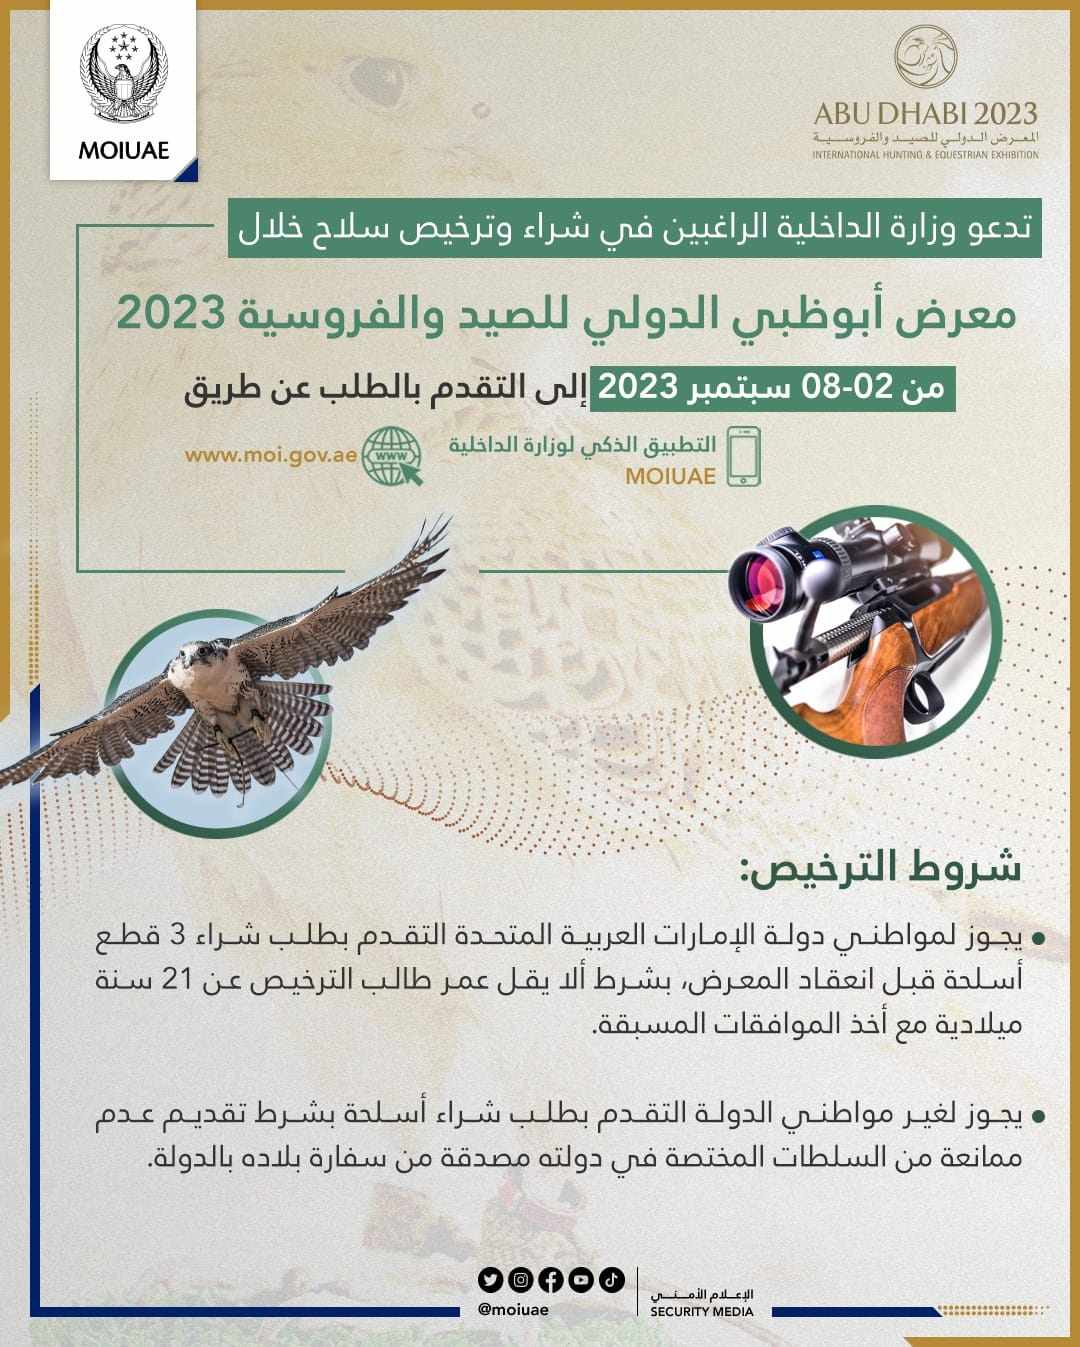 معرض أبوظبي الدولي للصيد والفروسية 2023